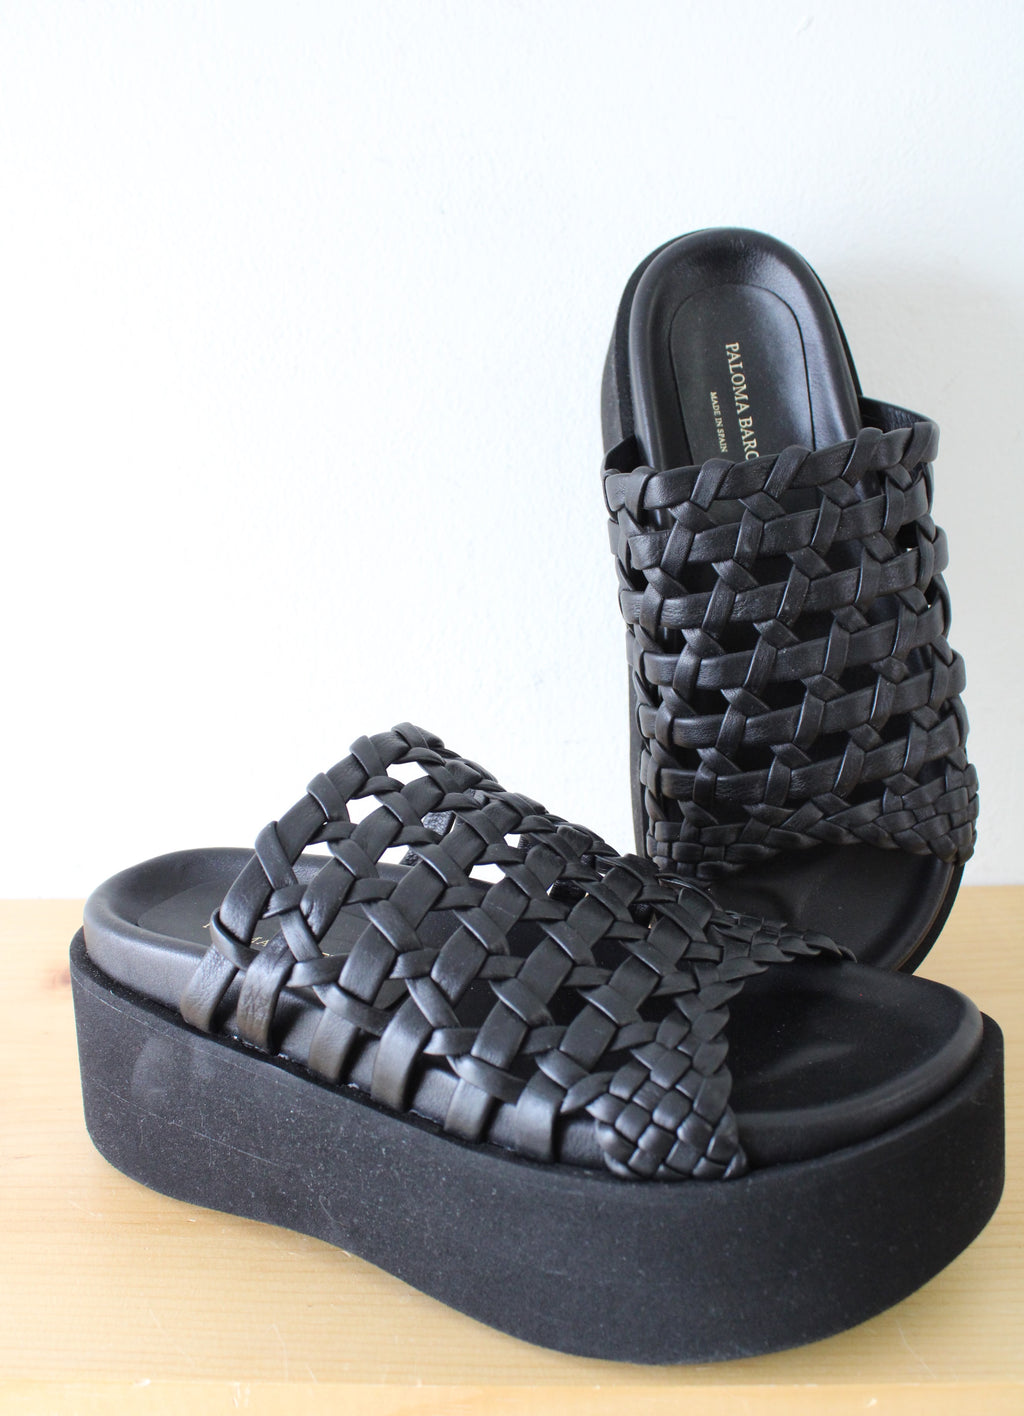 Paloma Barceló Woven Leather Platform Mule Sandals | Size 38 (7.5)